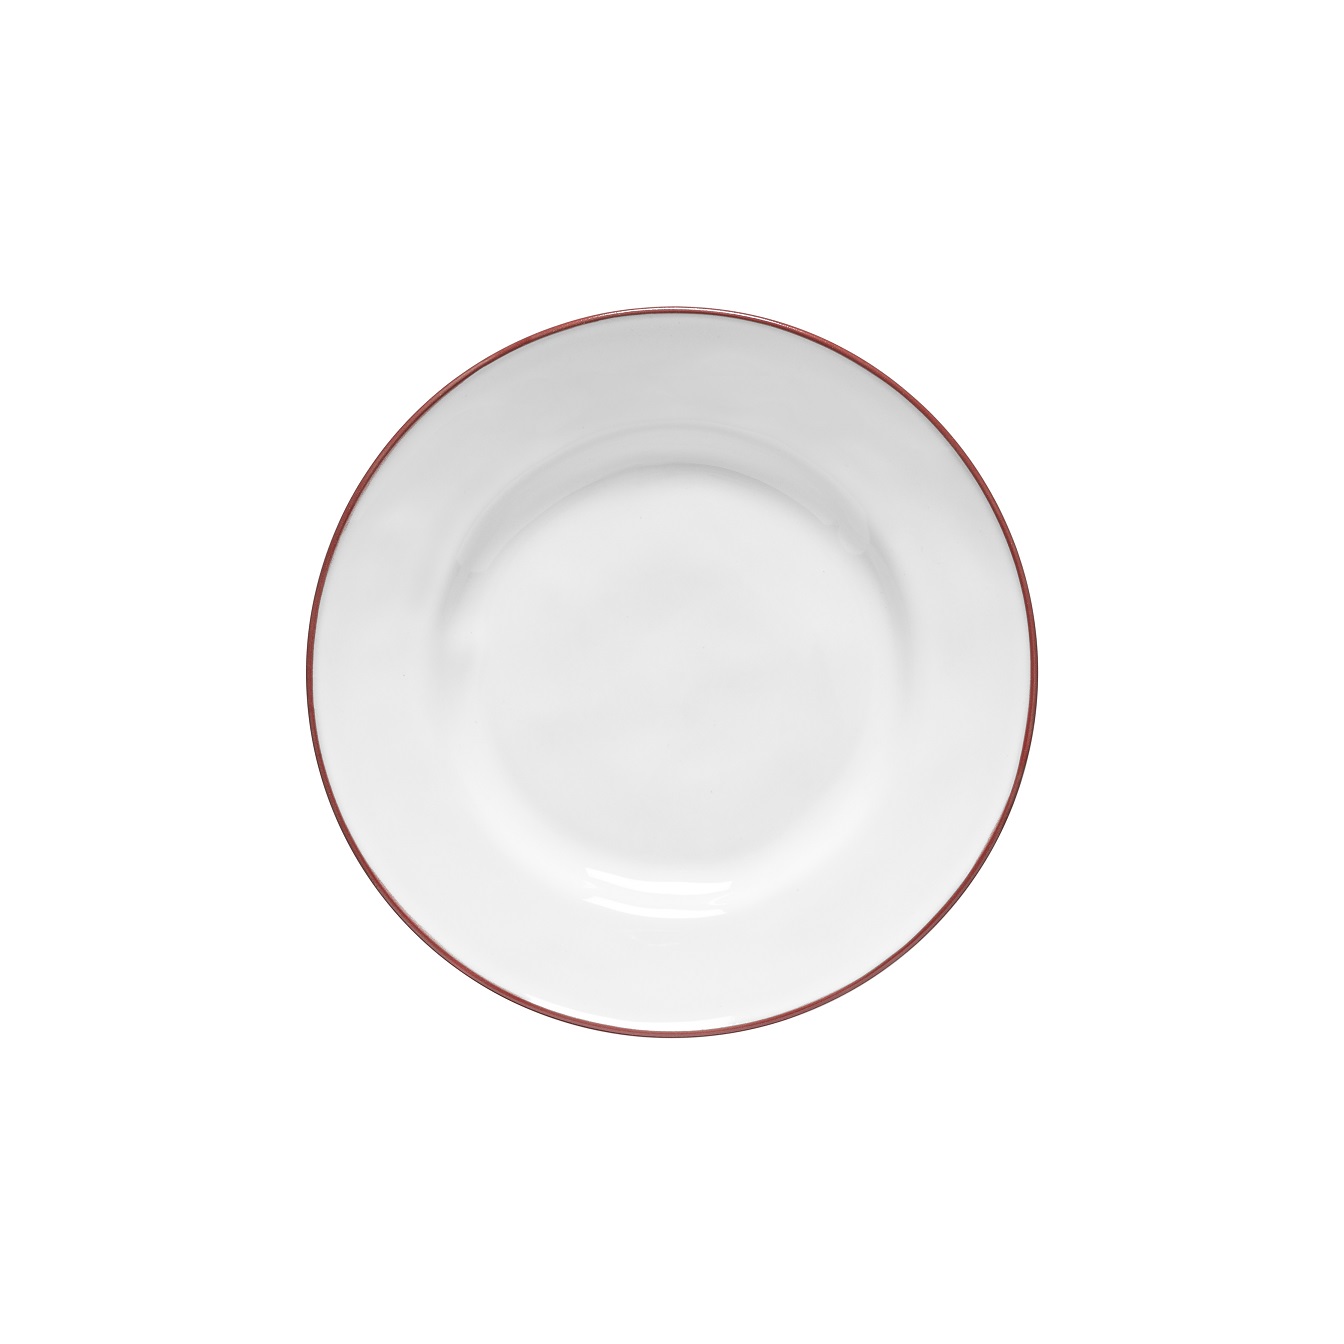 Beja White/red Salad Plate 23cm Gift